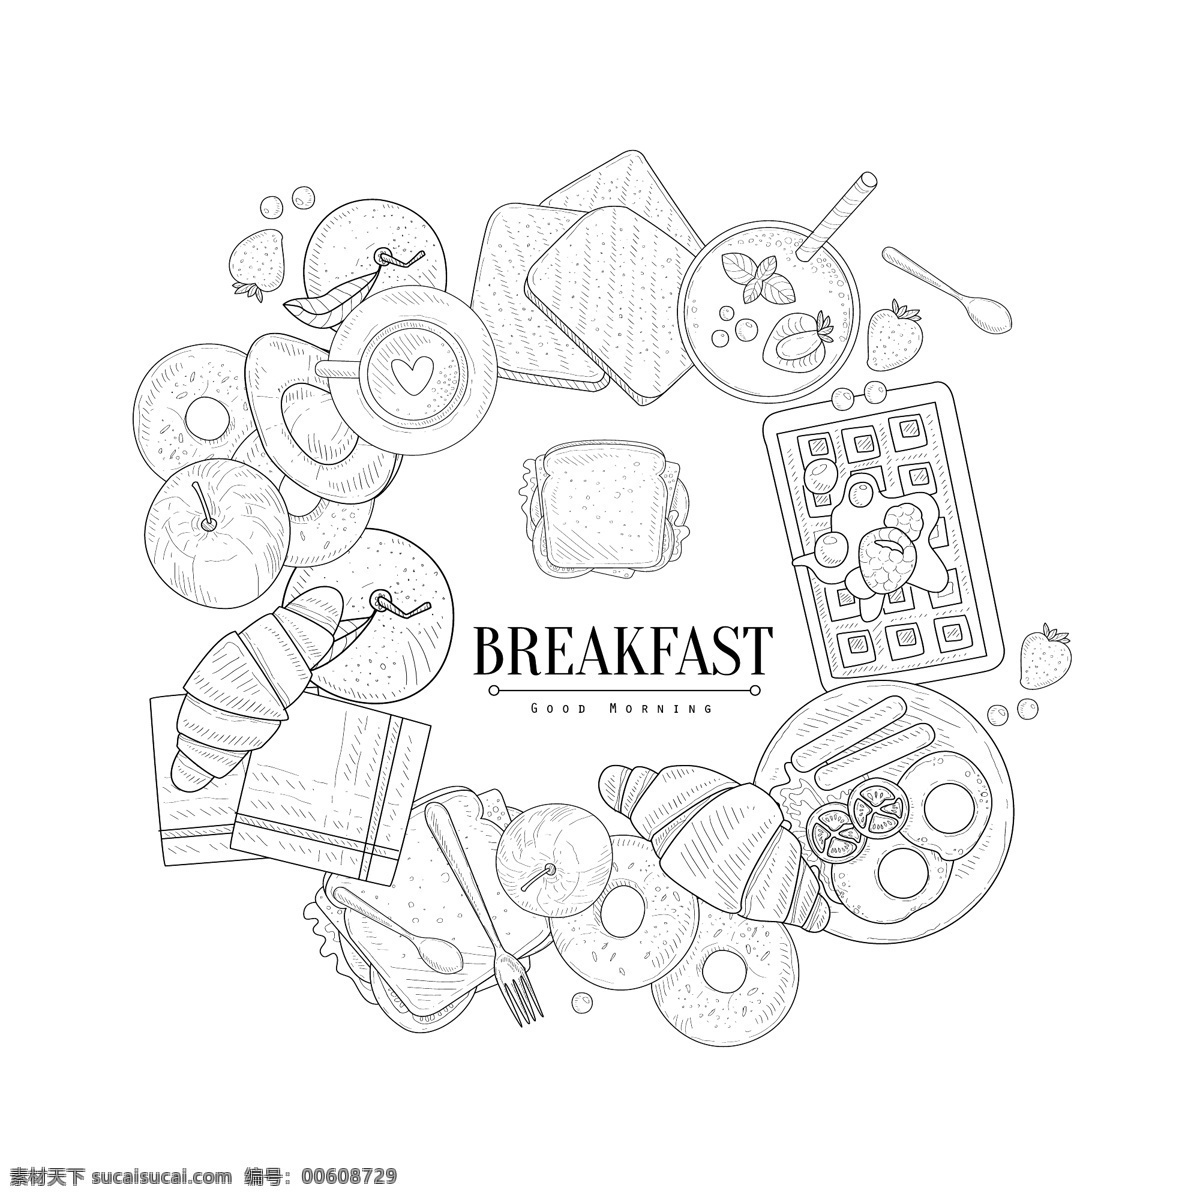 黑白 手绘 面包 早餐 插画 线条 煎蛋 水果 营养